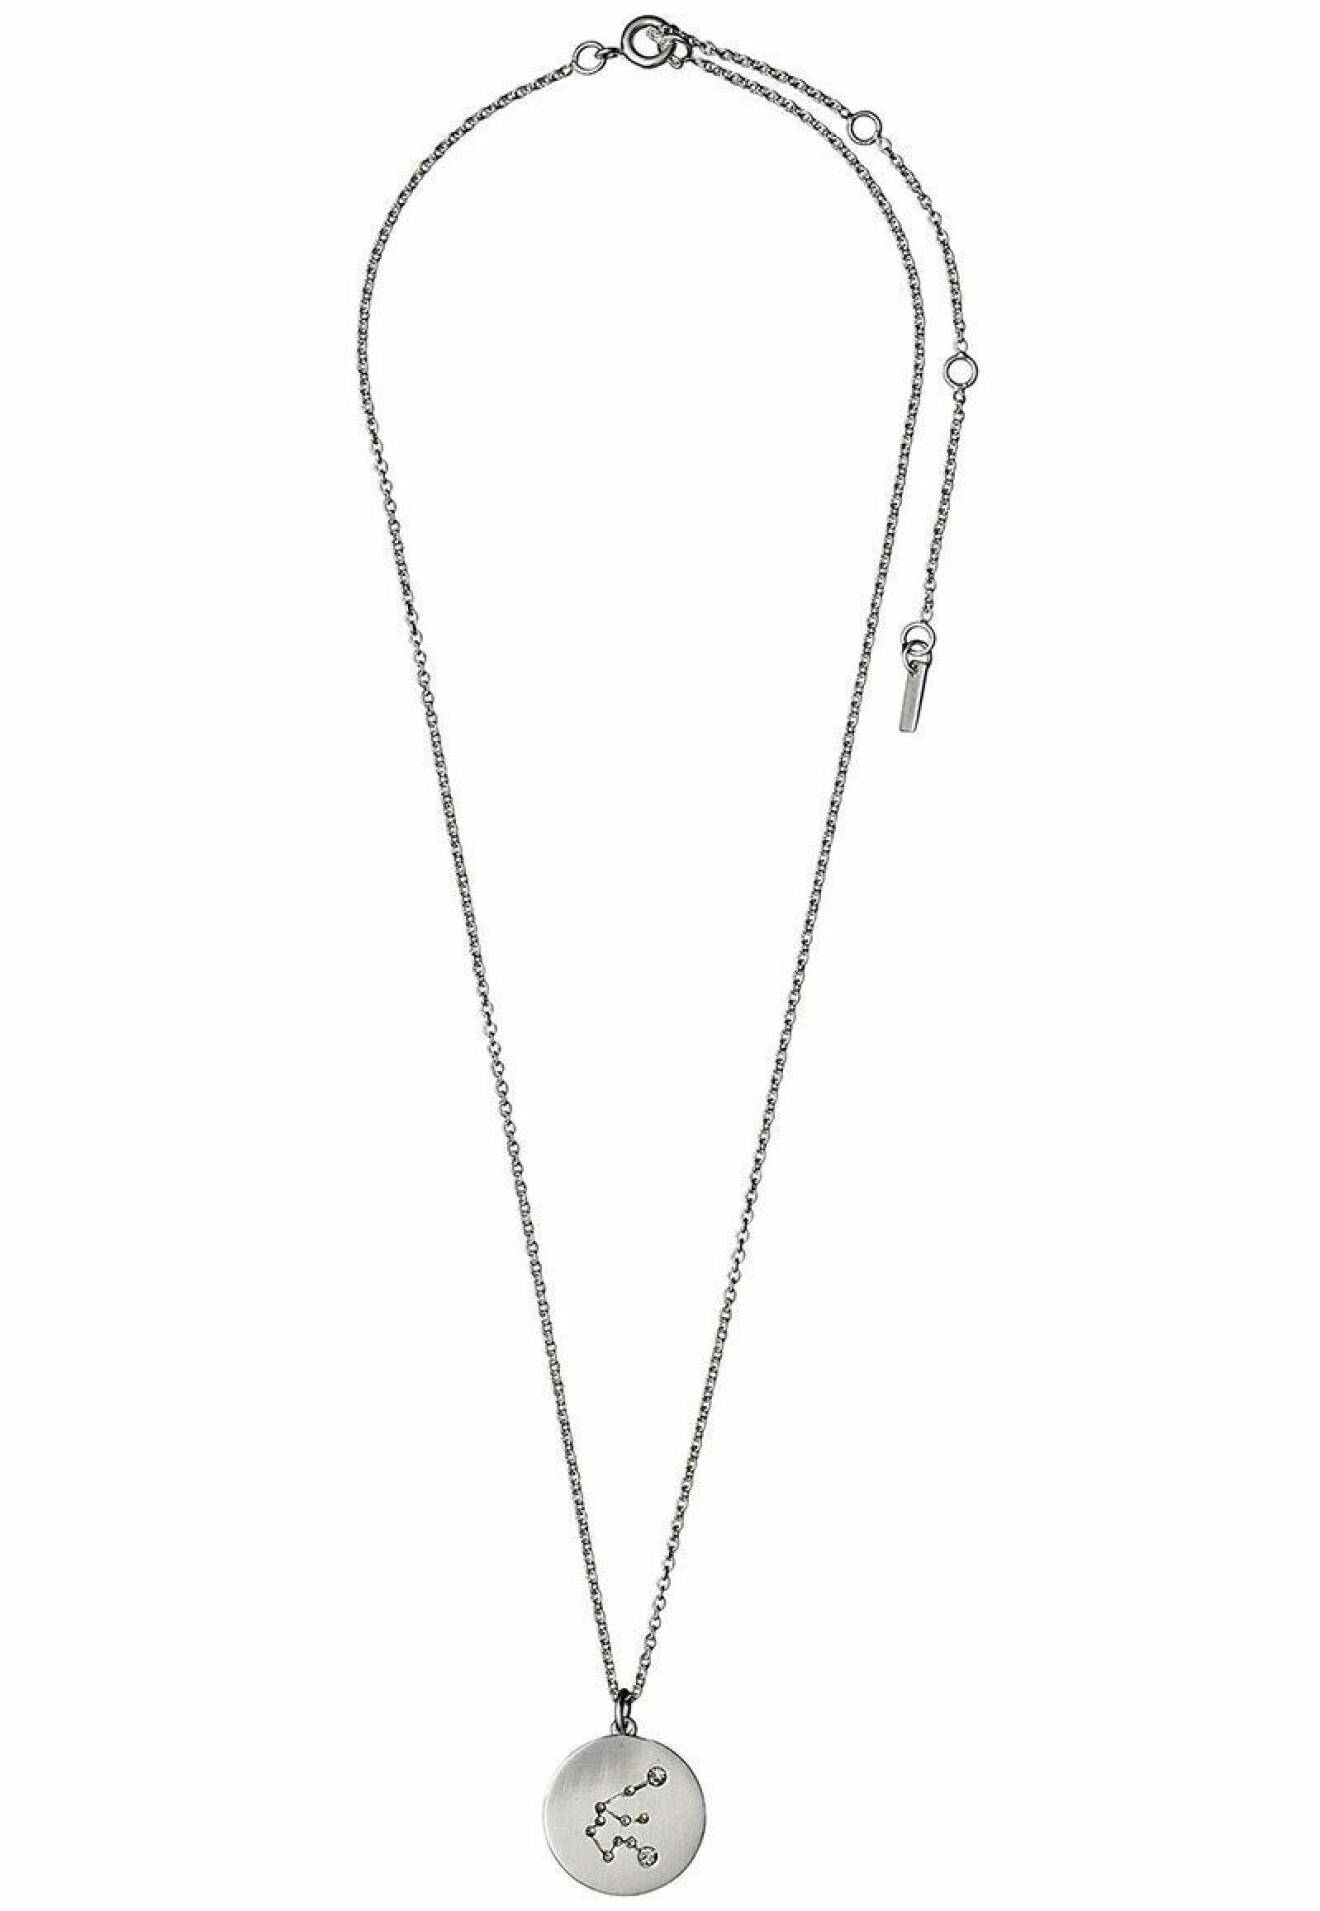 Halsband från Pilgrim med stjärntecknet vattumannen